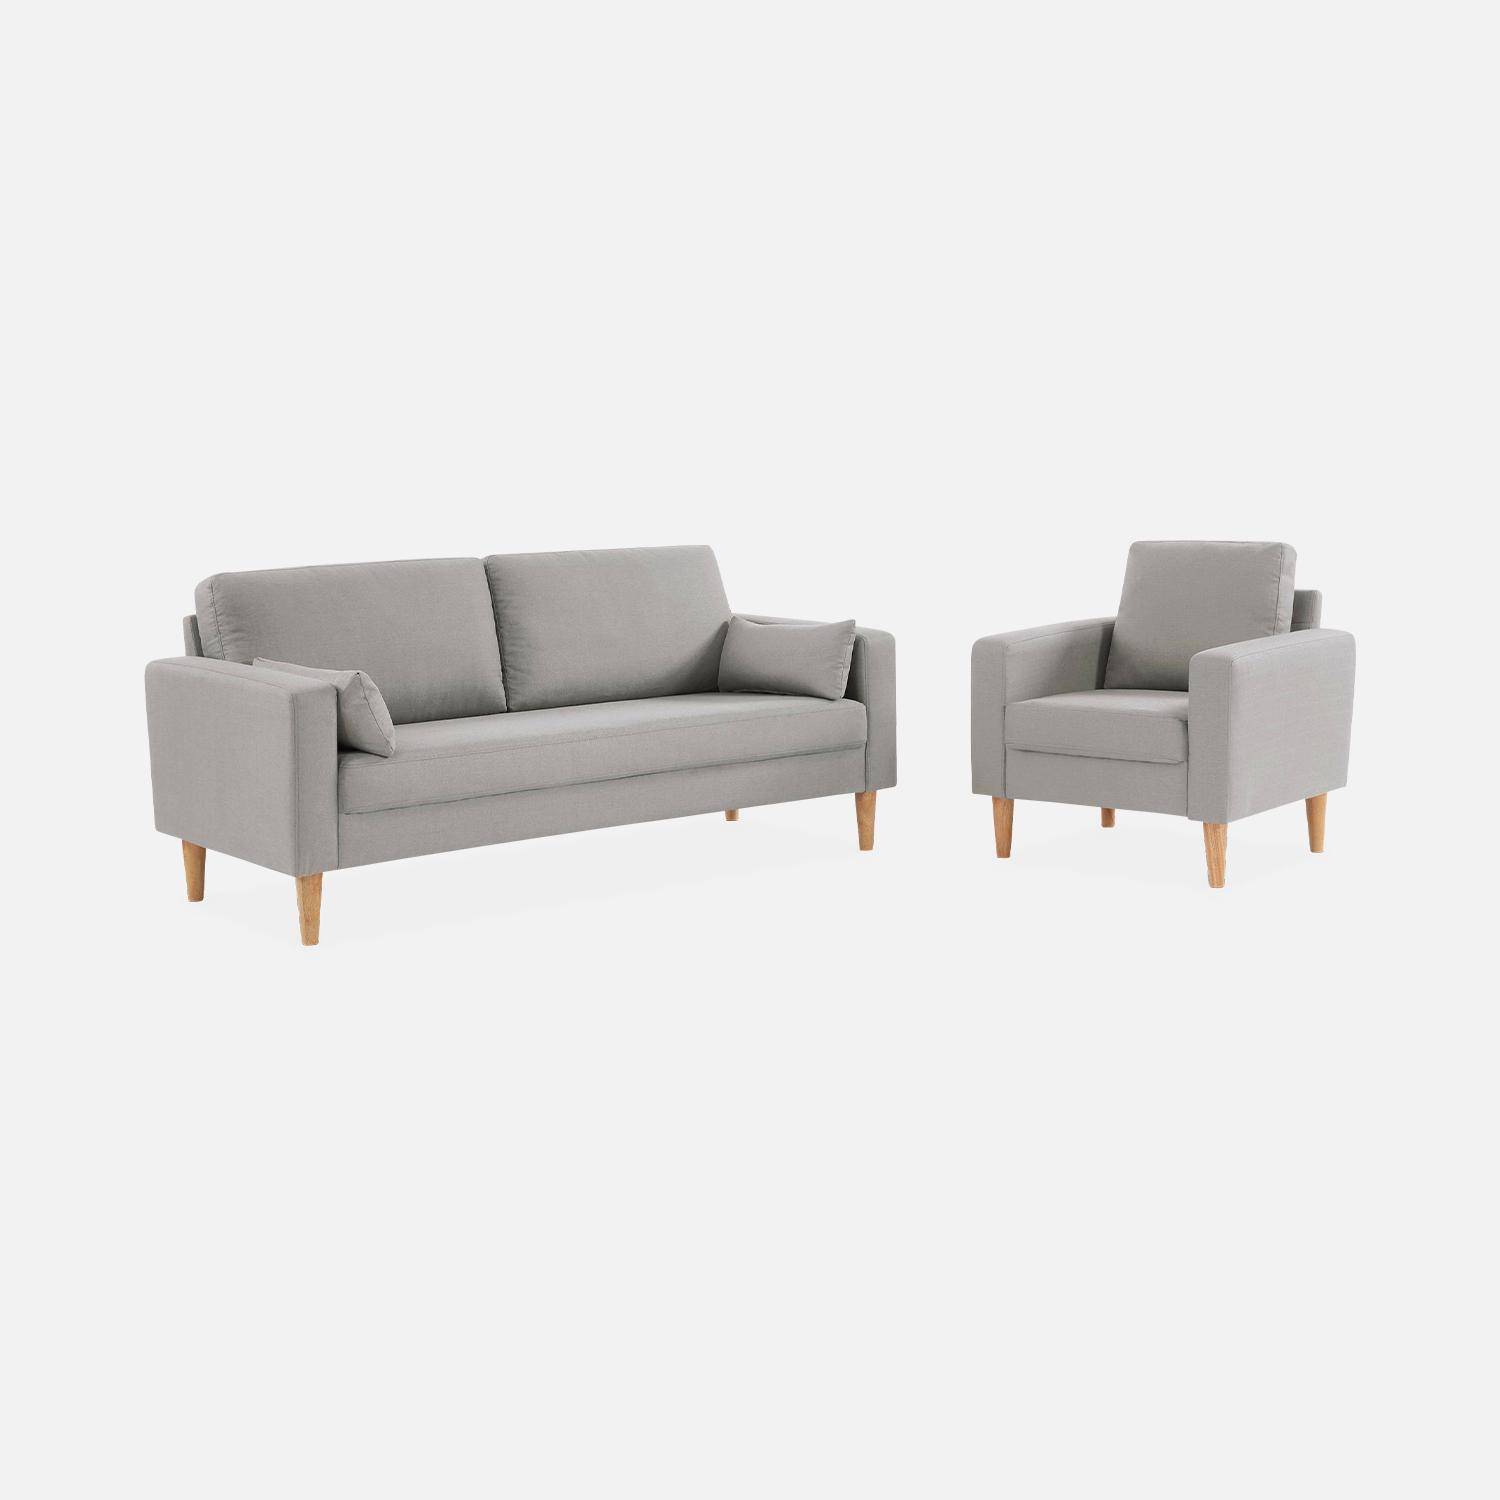 Lichtgrijs stoffen zetel - Bjorn - 1-zits sofa met houten poten, Scandinavische stijl Photo5